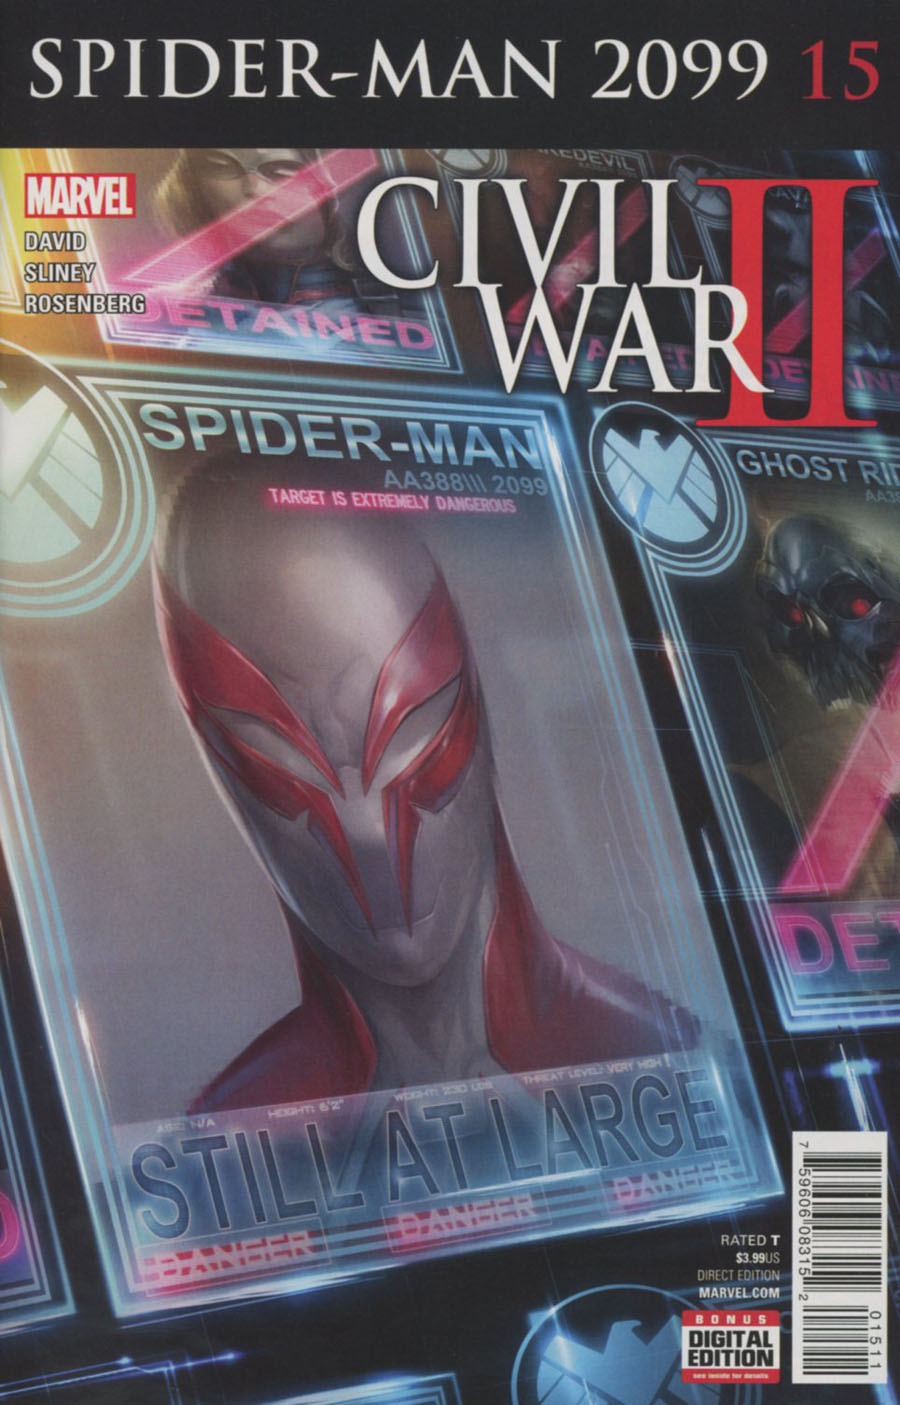 Spider-Man 2099 Vol 3 #15 (Civil War II Tie-In)